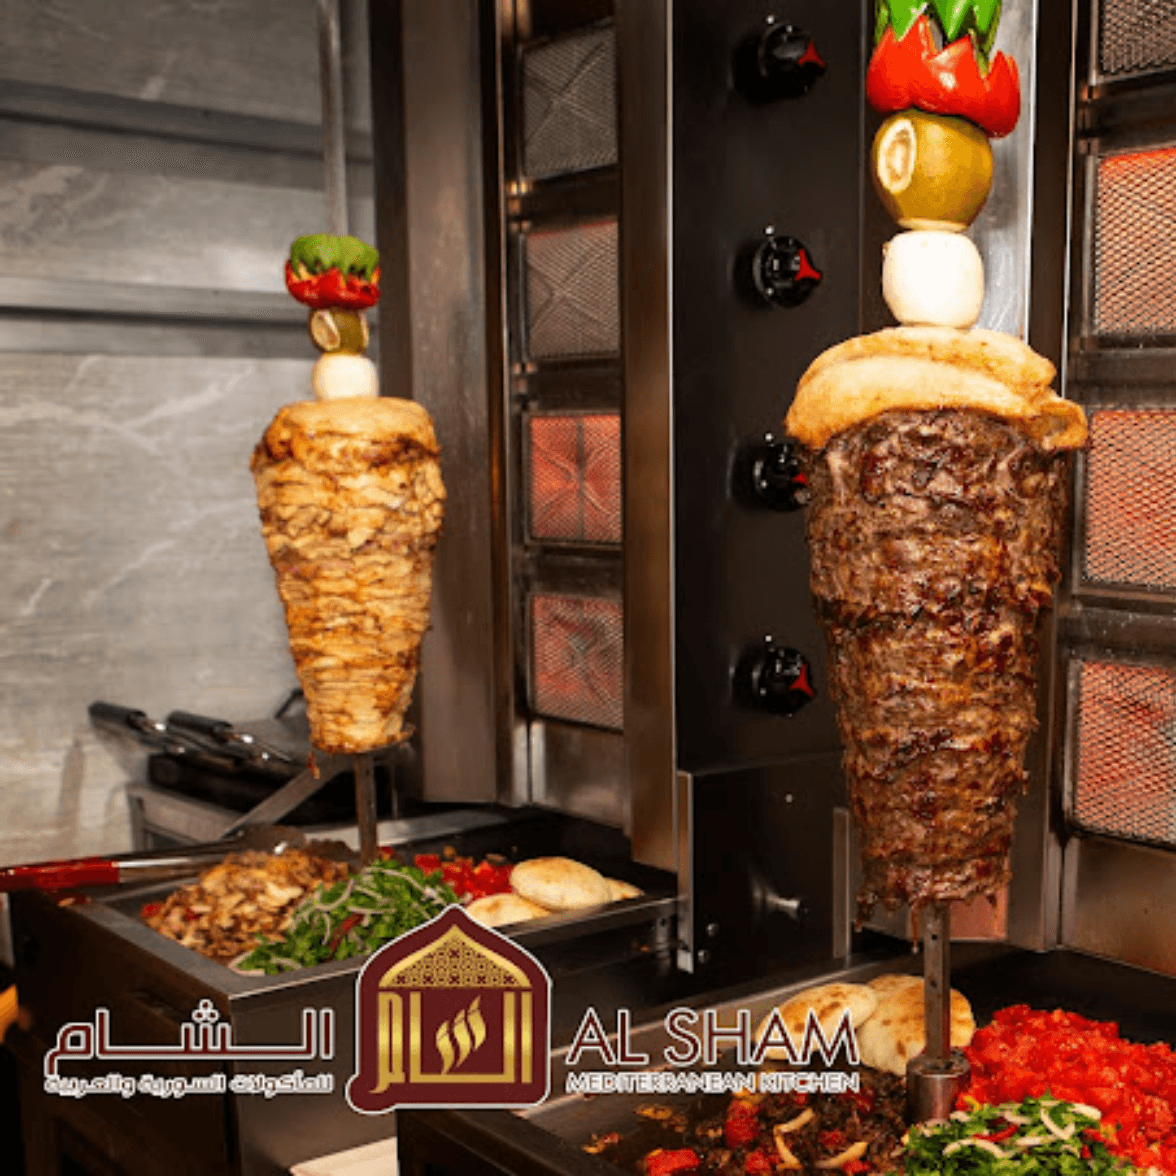 Welcome to Alsham Mediterranean Kitchen